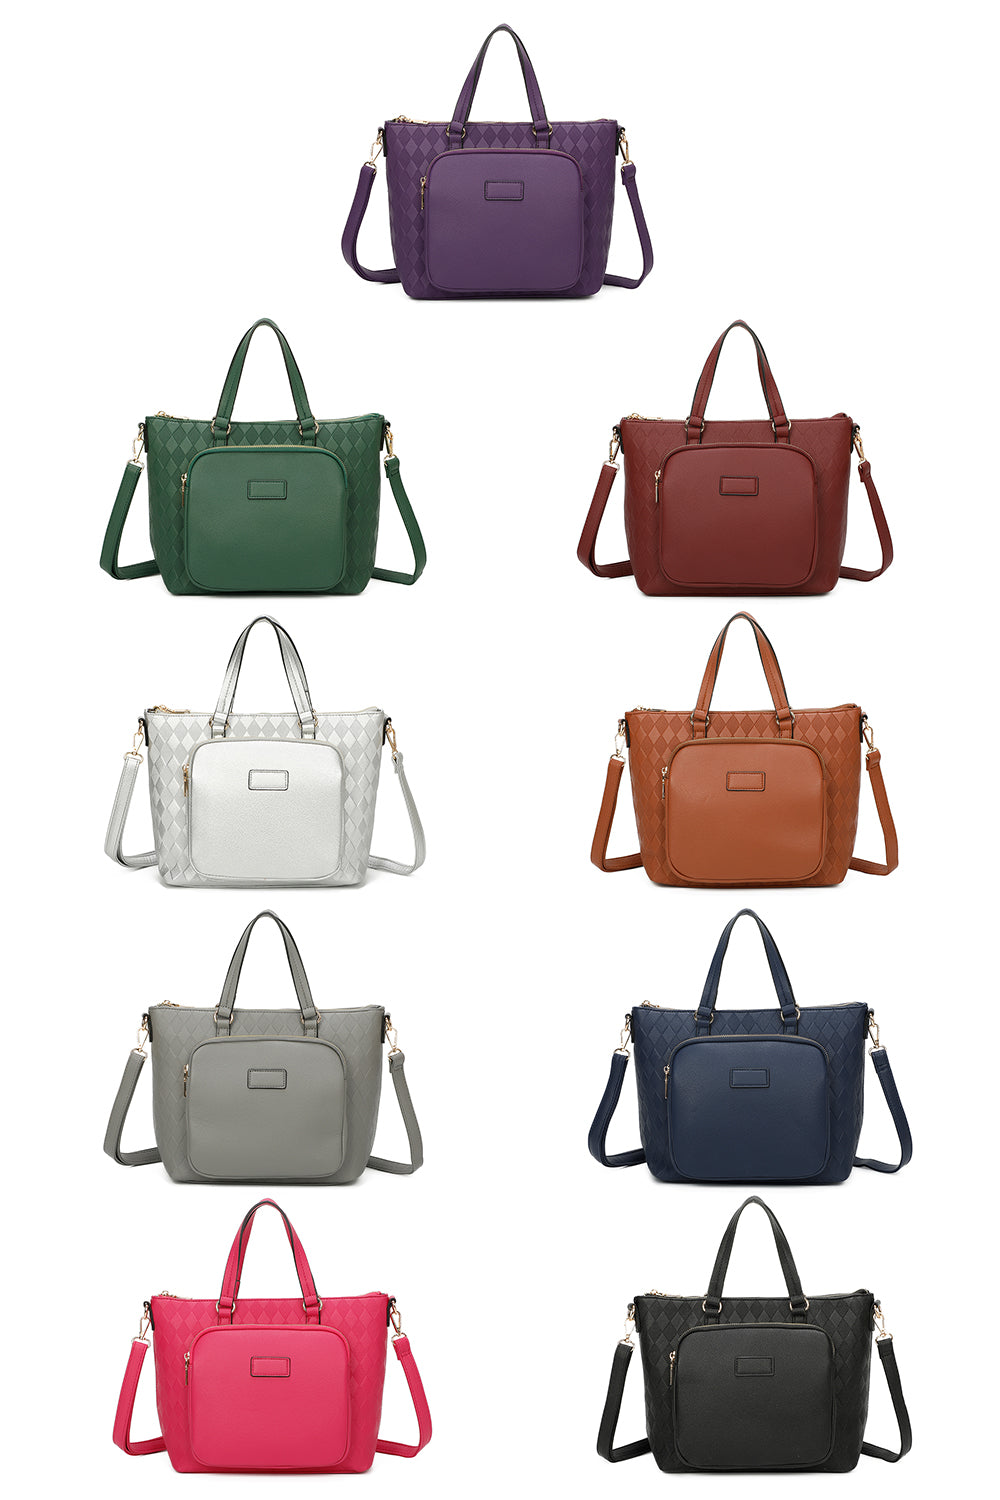 GiftofvisionShops - Designer Bags for Women on Sale - shoulder bag with  logo the marc jacobs bag